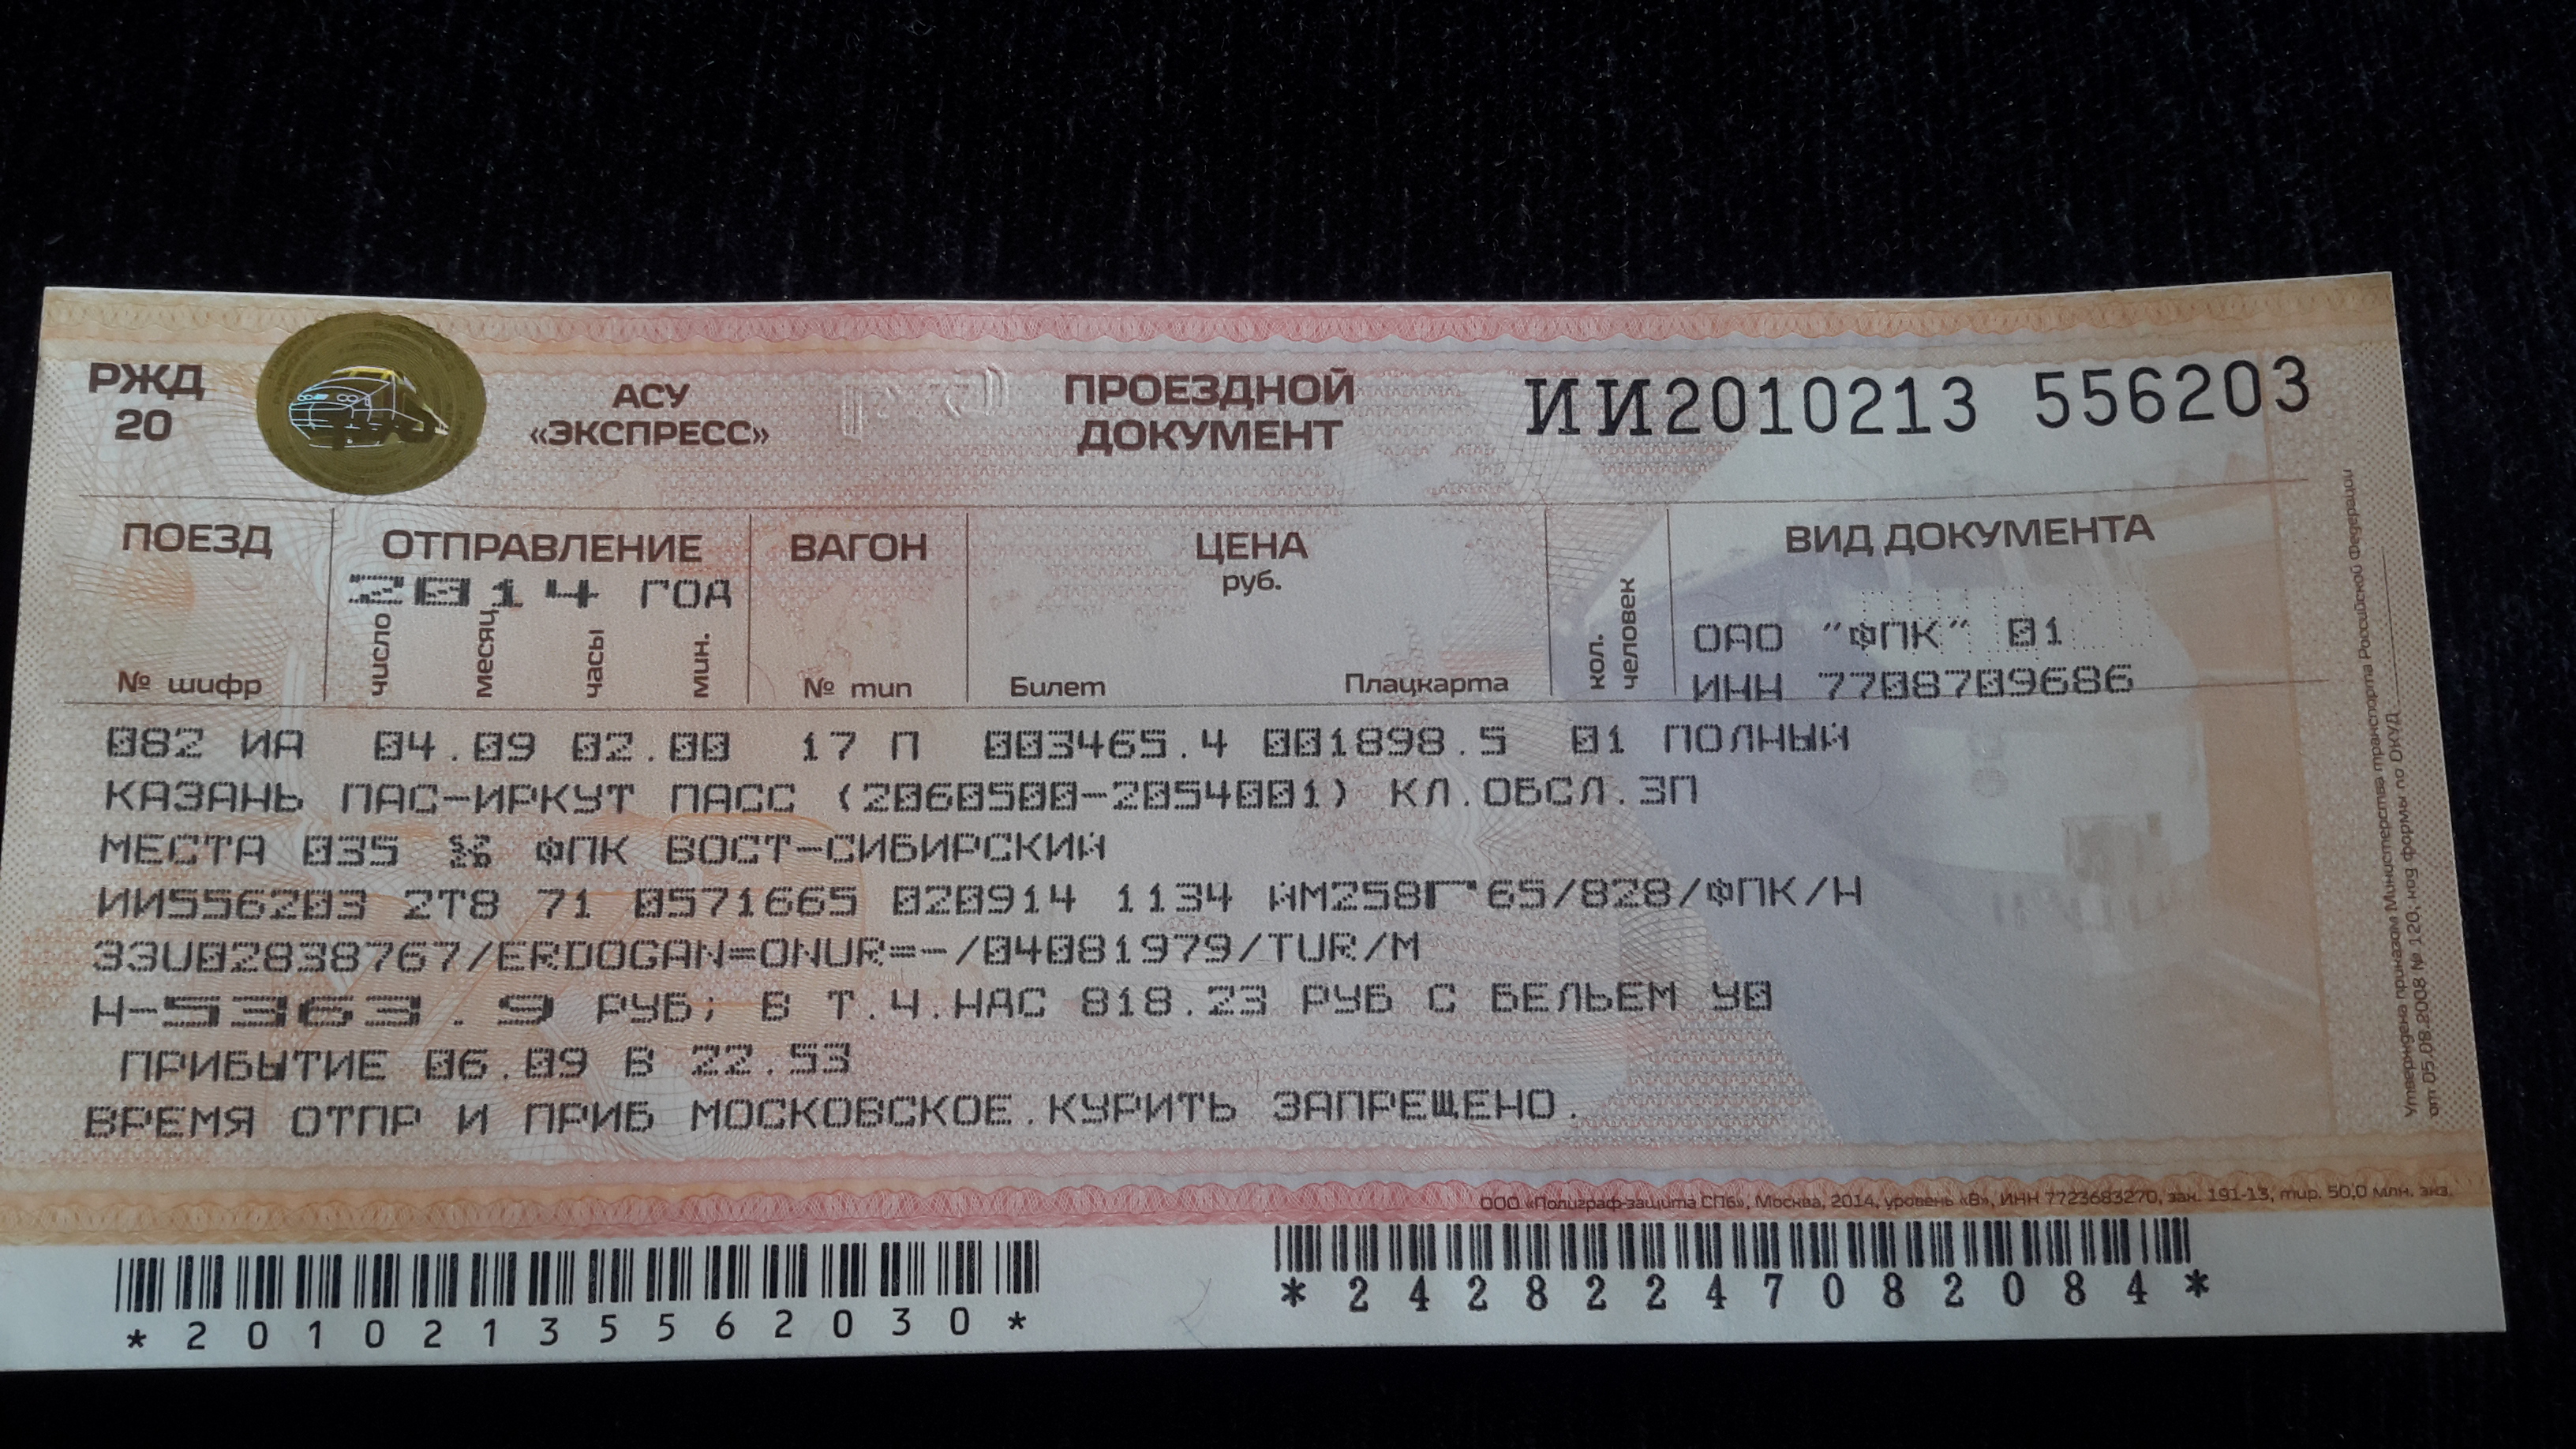 Сколько стоит билет с москвы до хабаровска. Проездной билет на поезд. Проездной документ. Билет на поезд Оренбург Москва. Фото билета на поезд плацкарт.